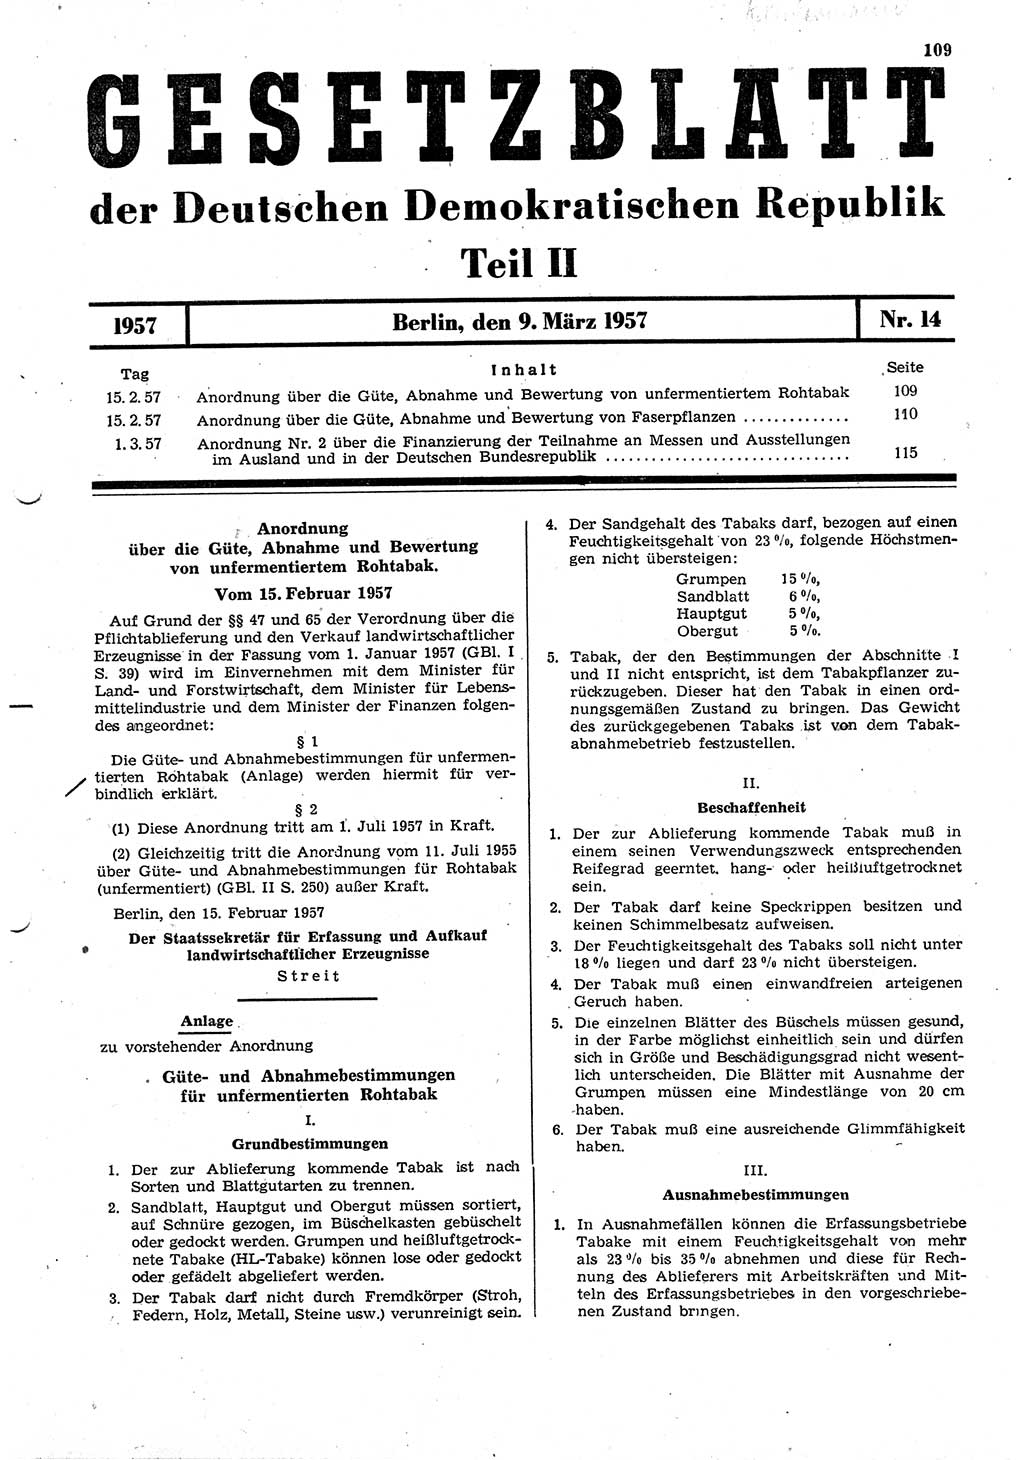 Gesetzblatt (GBl.) der Deutschen Demokratischen Republik (DDR) Teil ⅠⅠ 1957, Seite 109 (GBl. DDR ⅠⅠ 1957, S. 109)